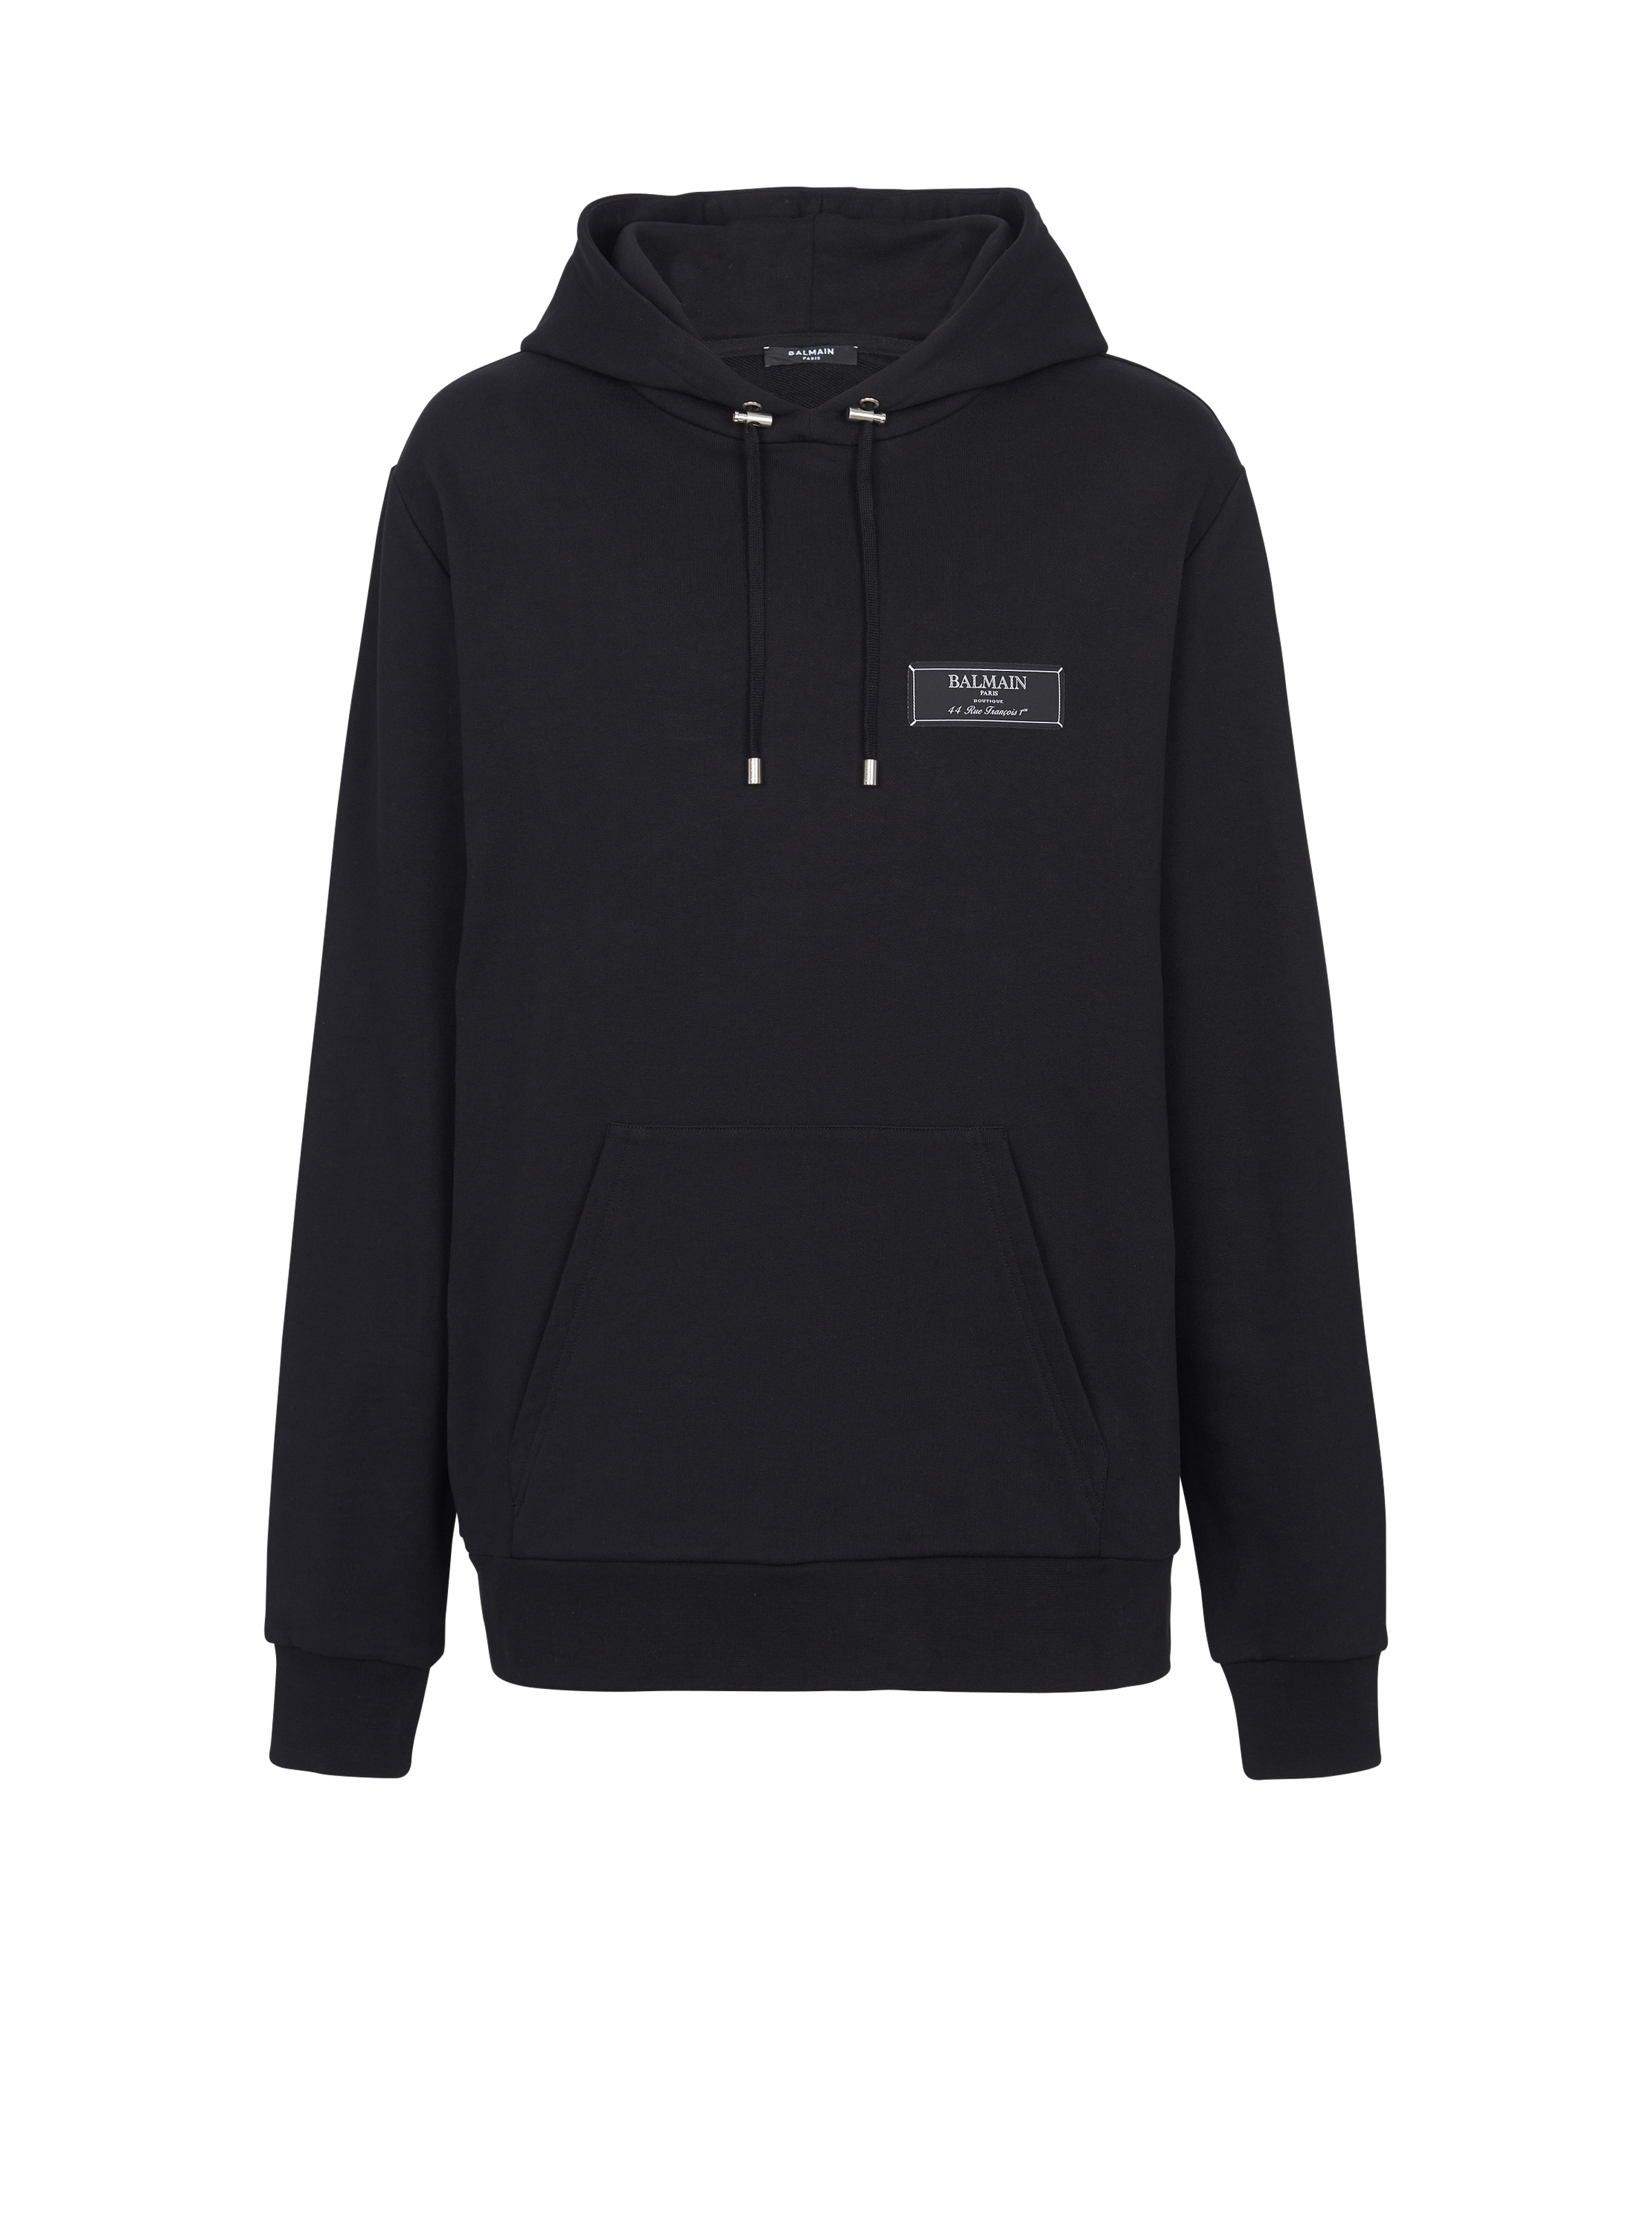 Balmain label hoodie - 1